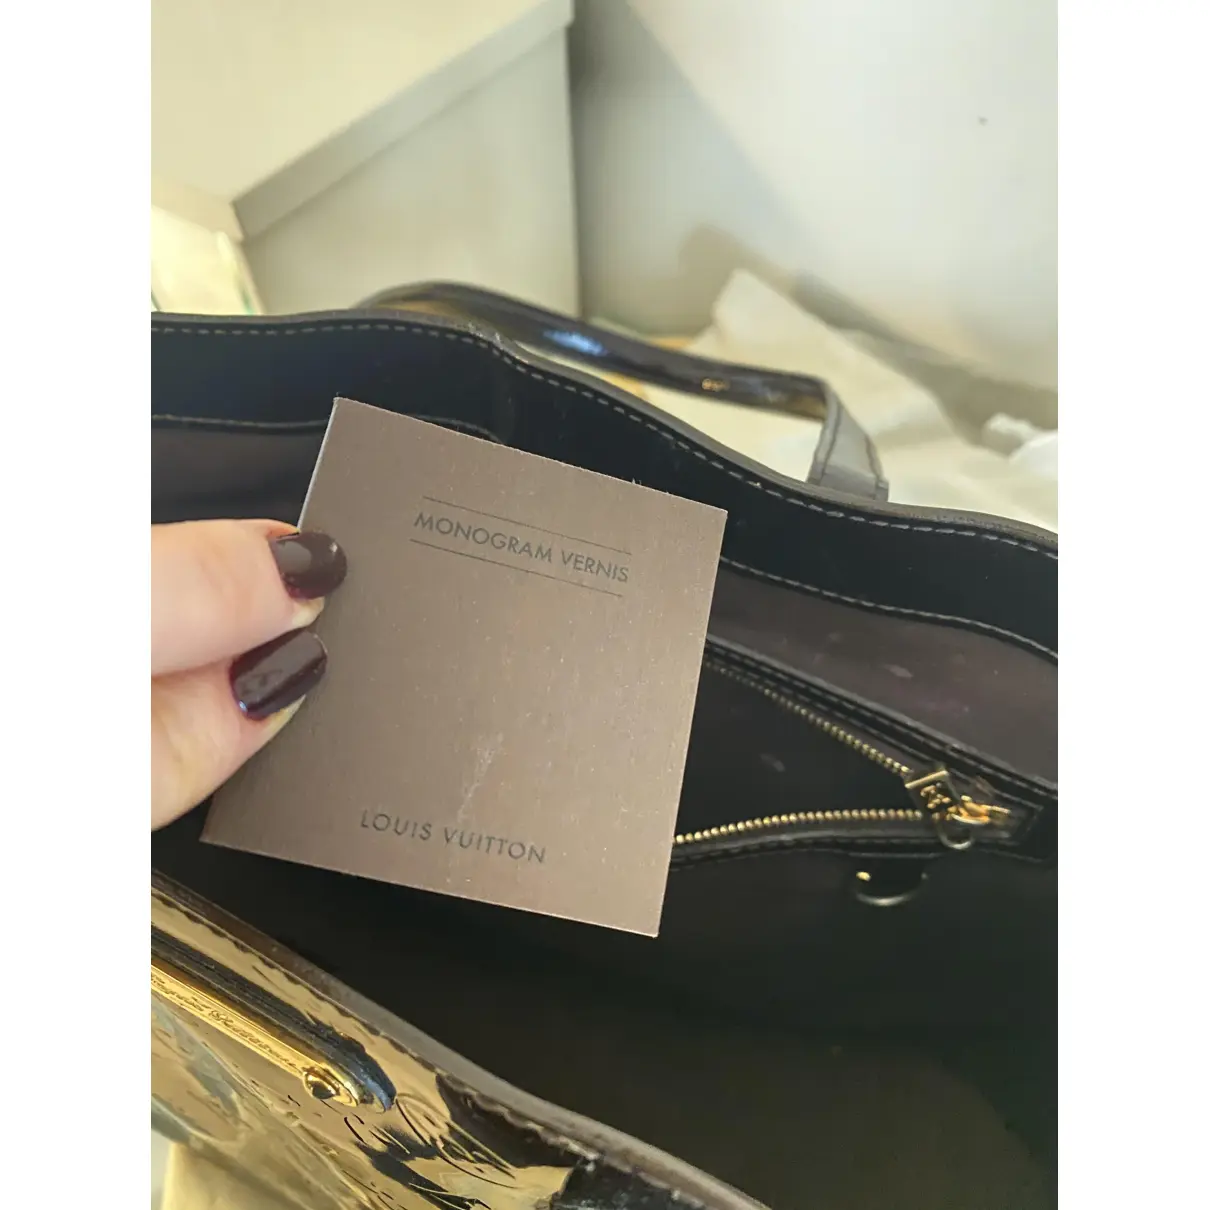 Buy Louis Vuitton Patent leather handbag online